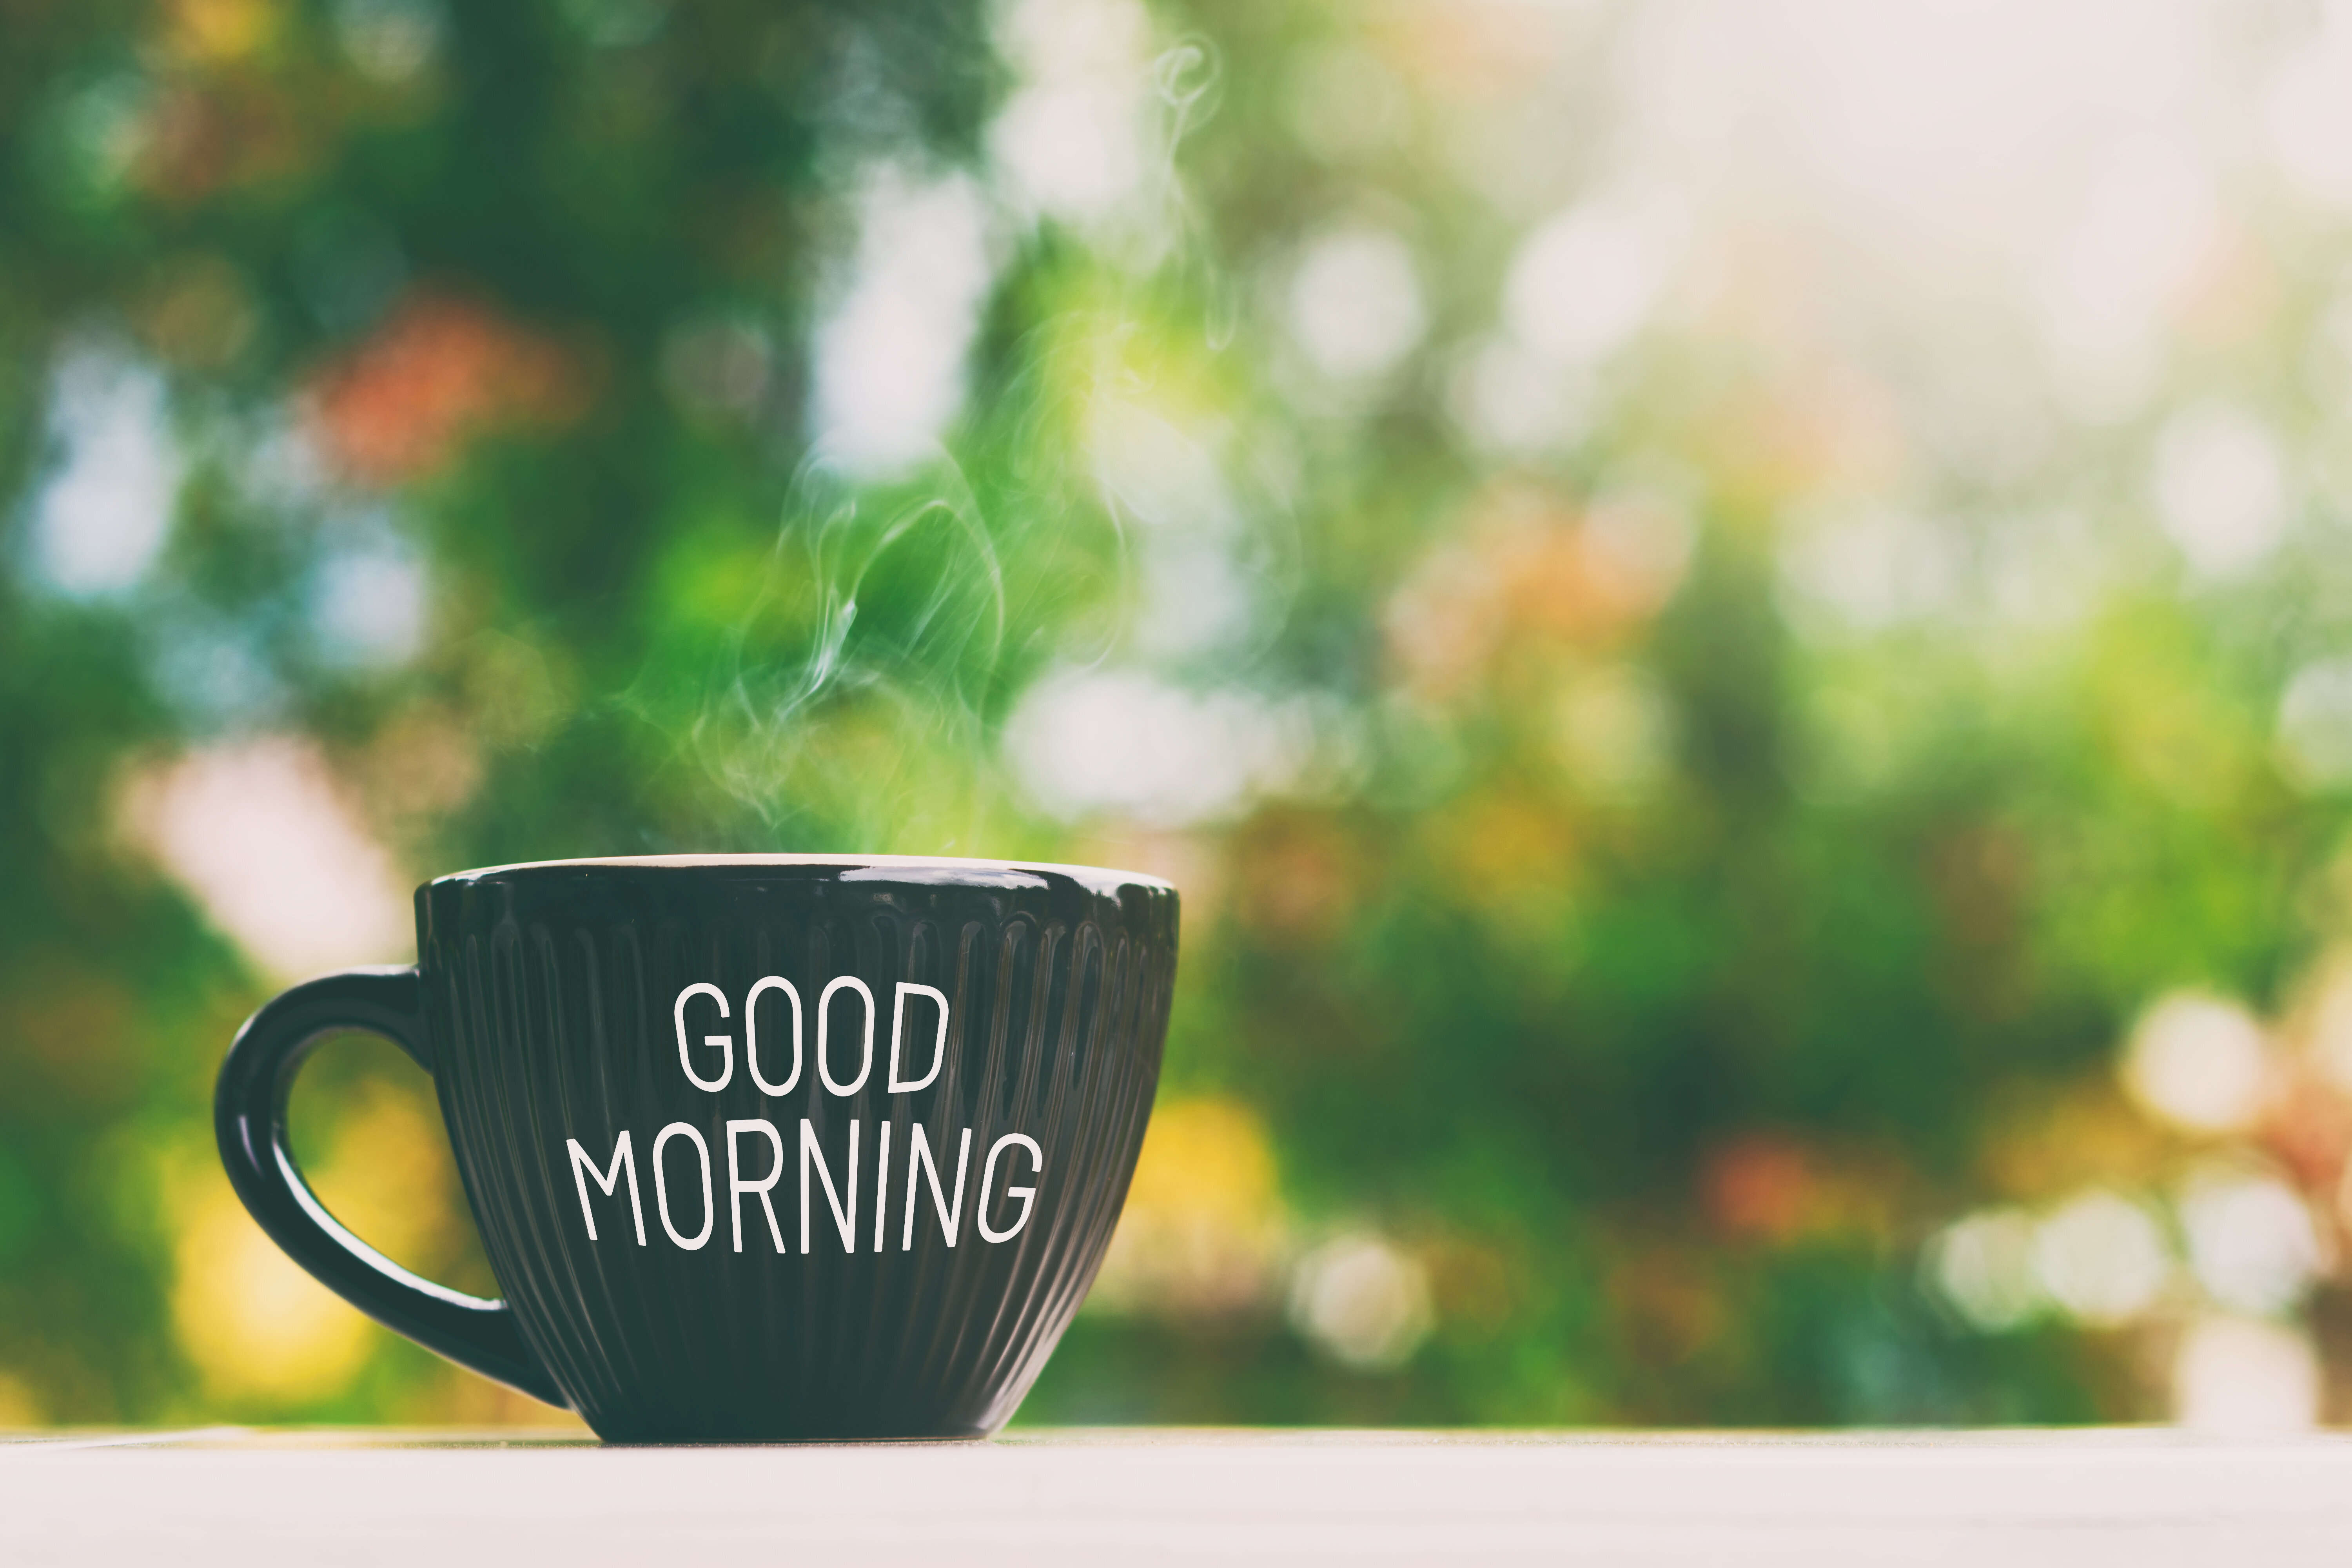 Включи good morning. Good morning кофе. Good morning картинки. Утро. Заставка good morning.